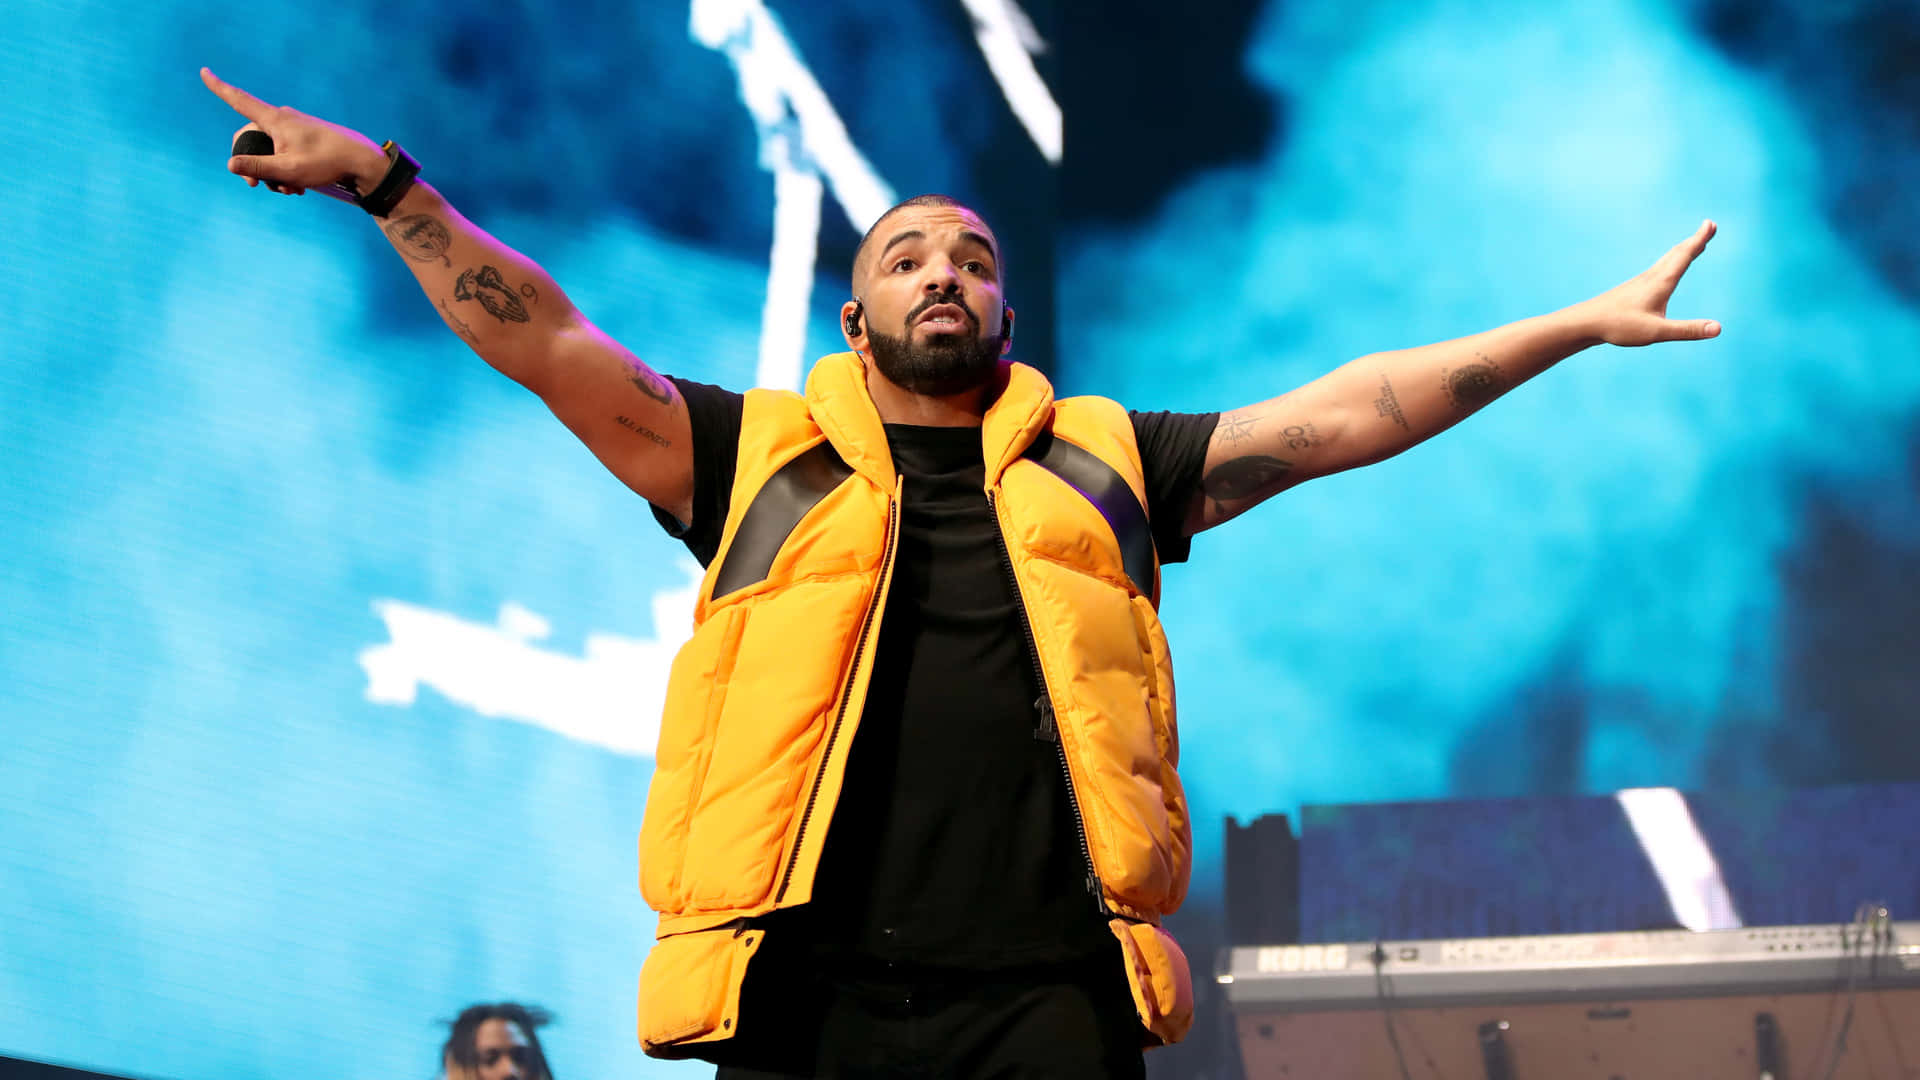 Drake optræder på et koncert med sine arme udstrakte Wallpaper